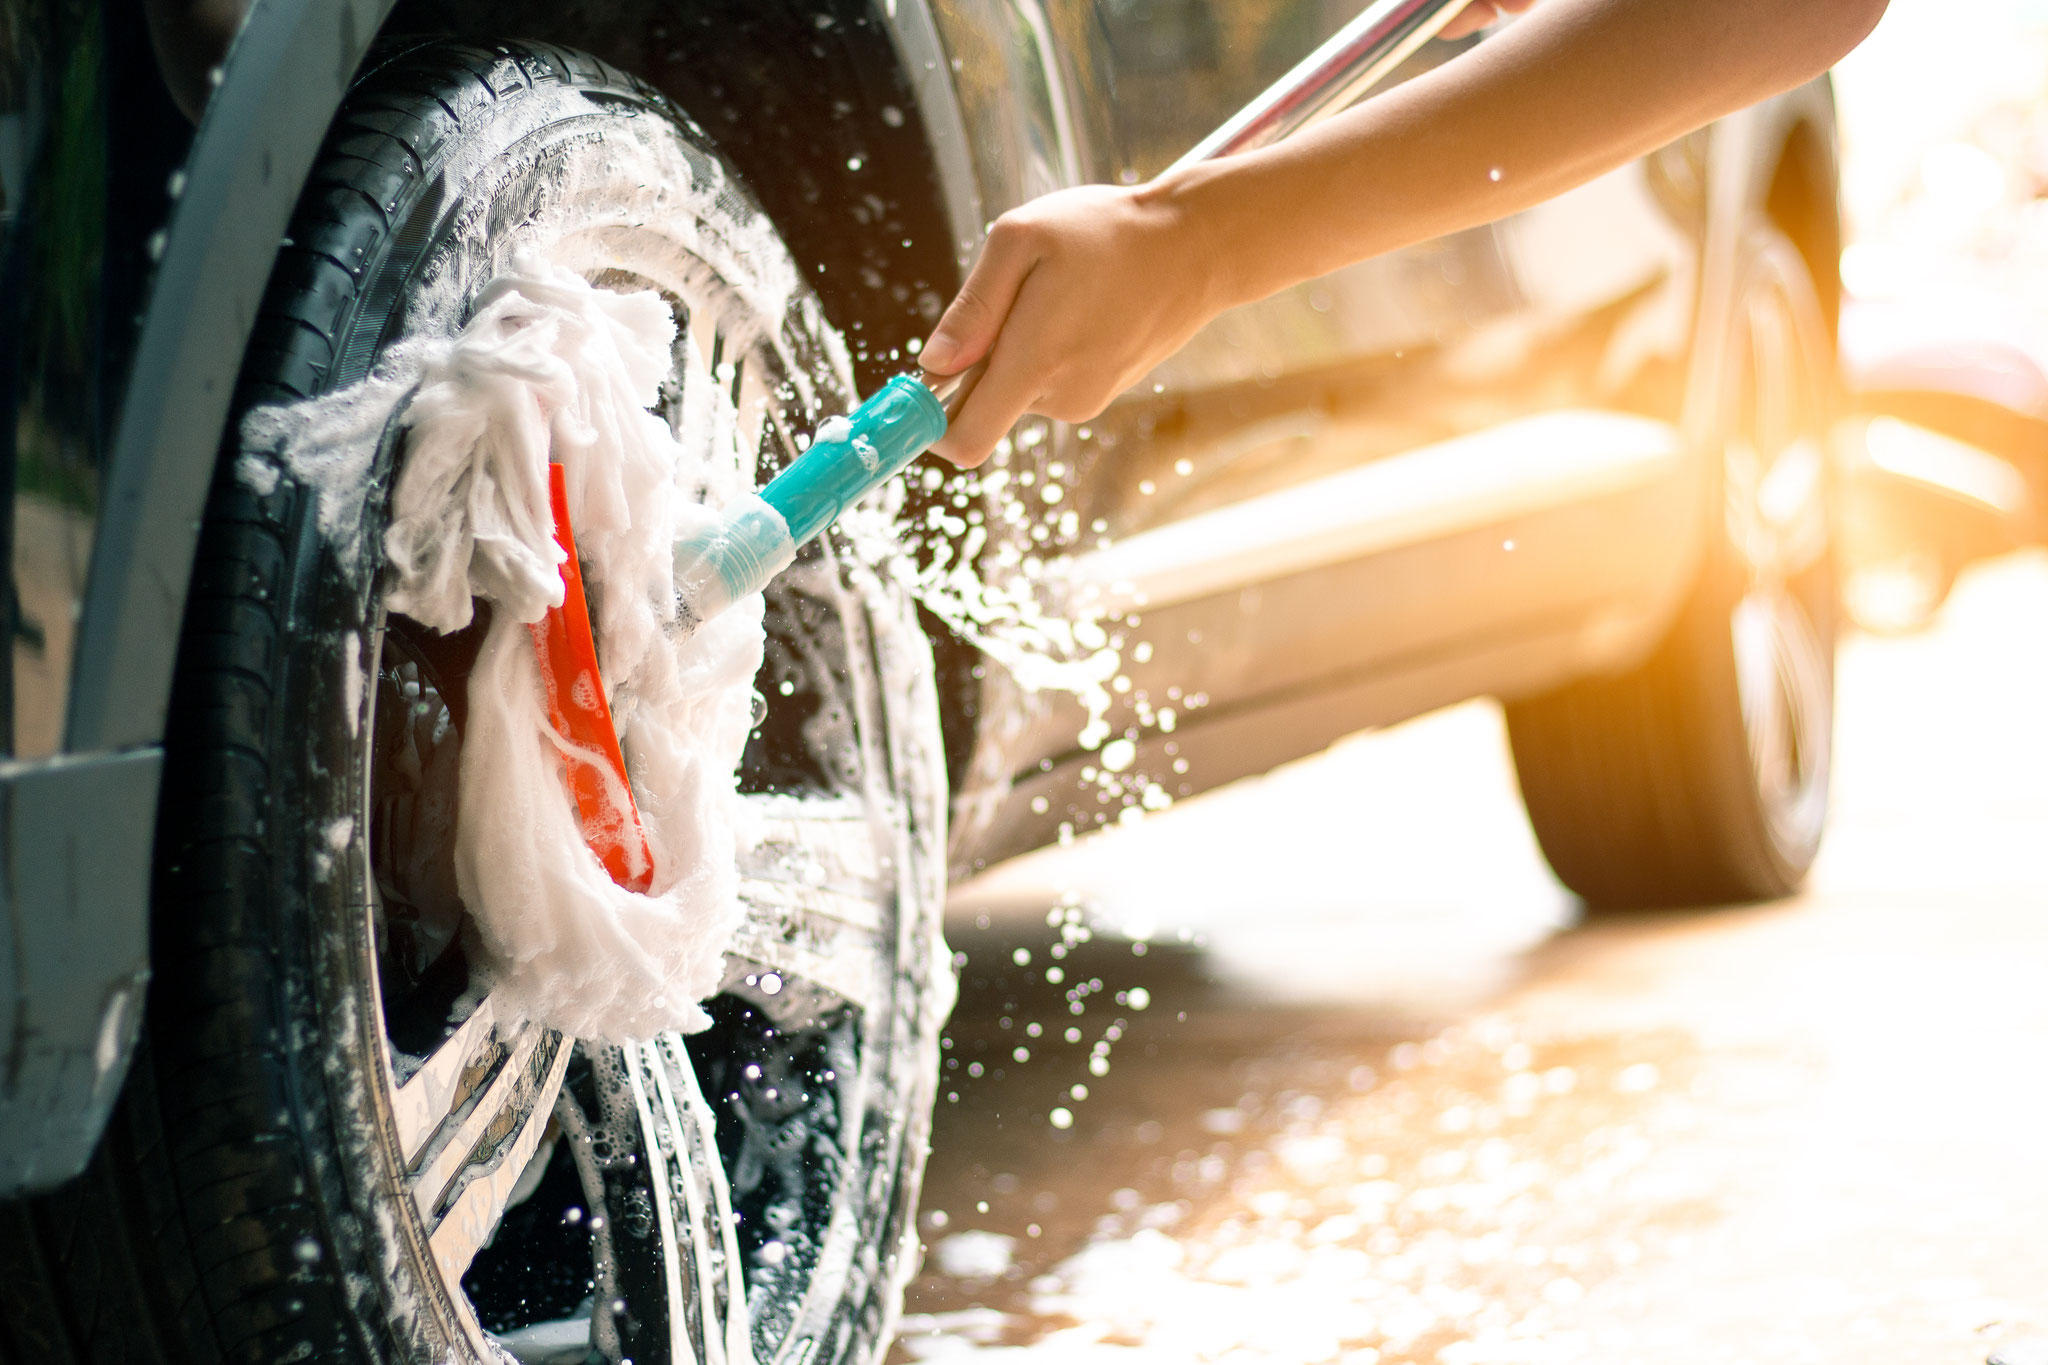 Мыло для мытья машины